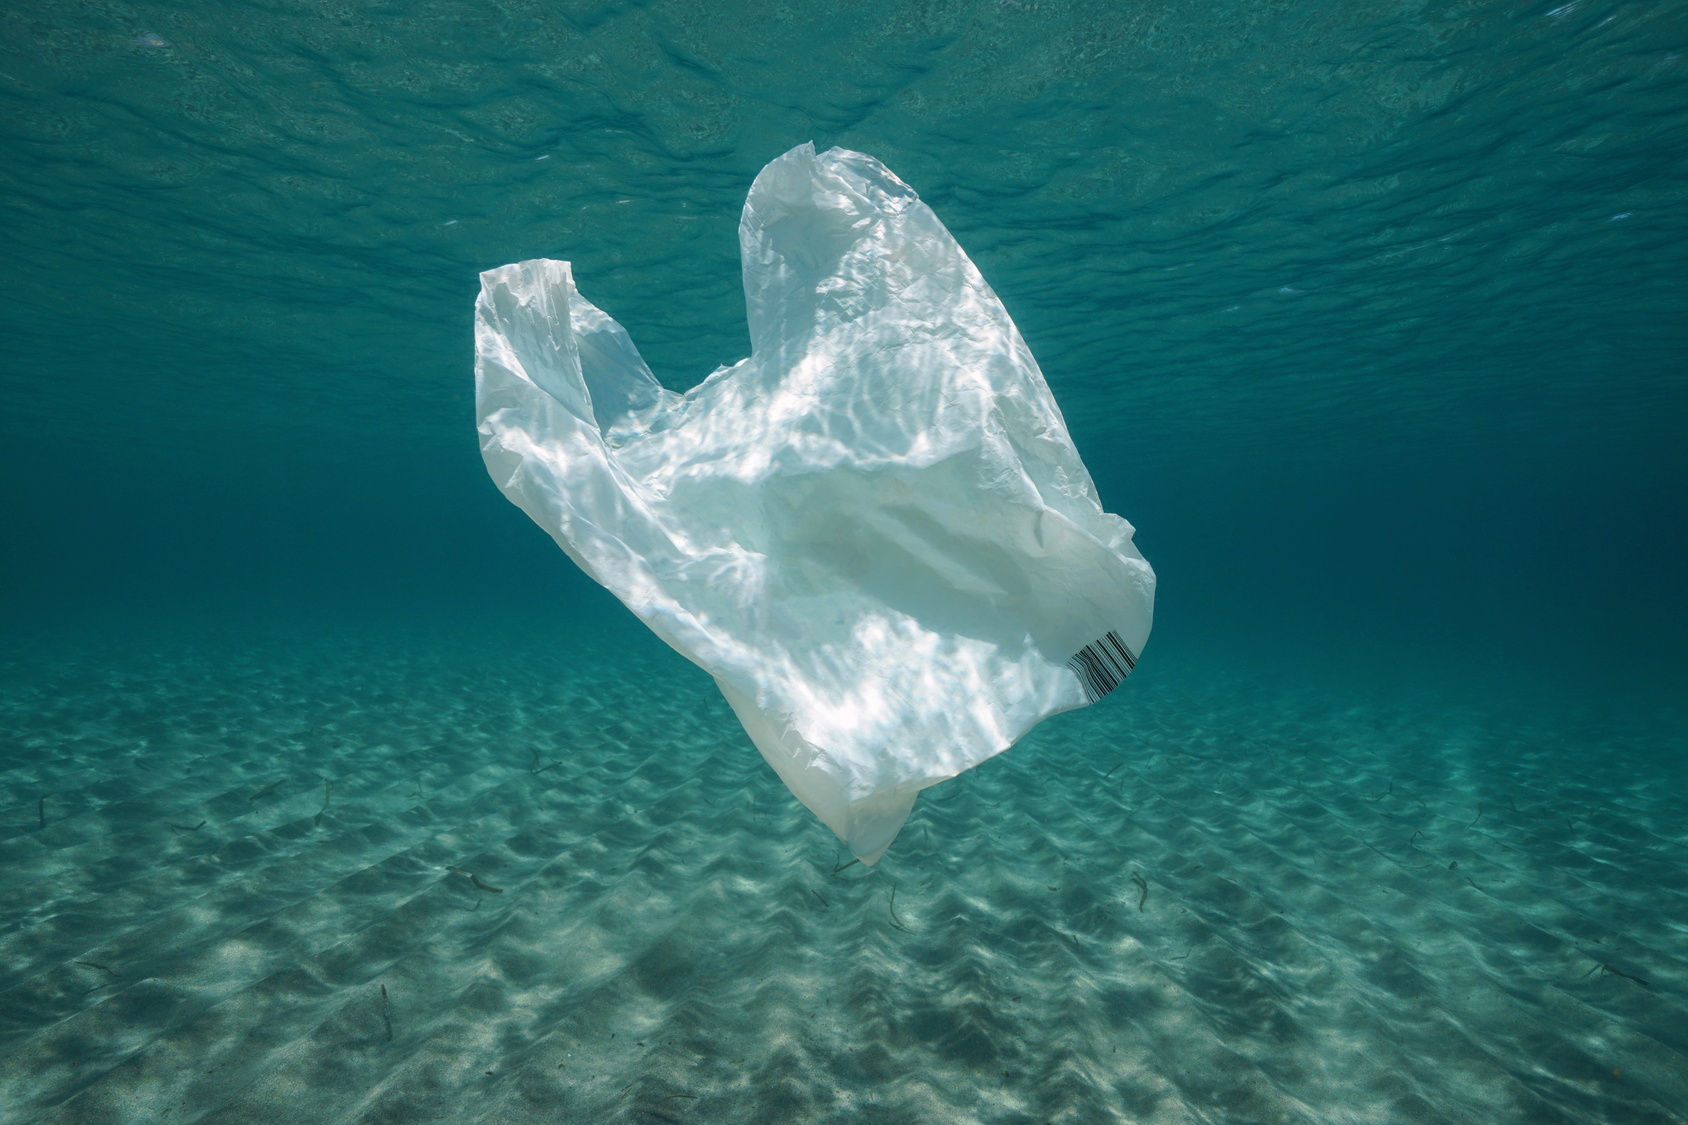 Des sacs plastiques qui se dissolvent dans l'eau